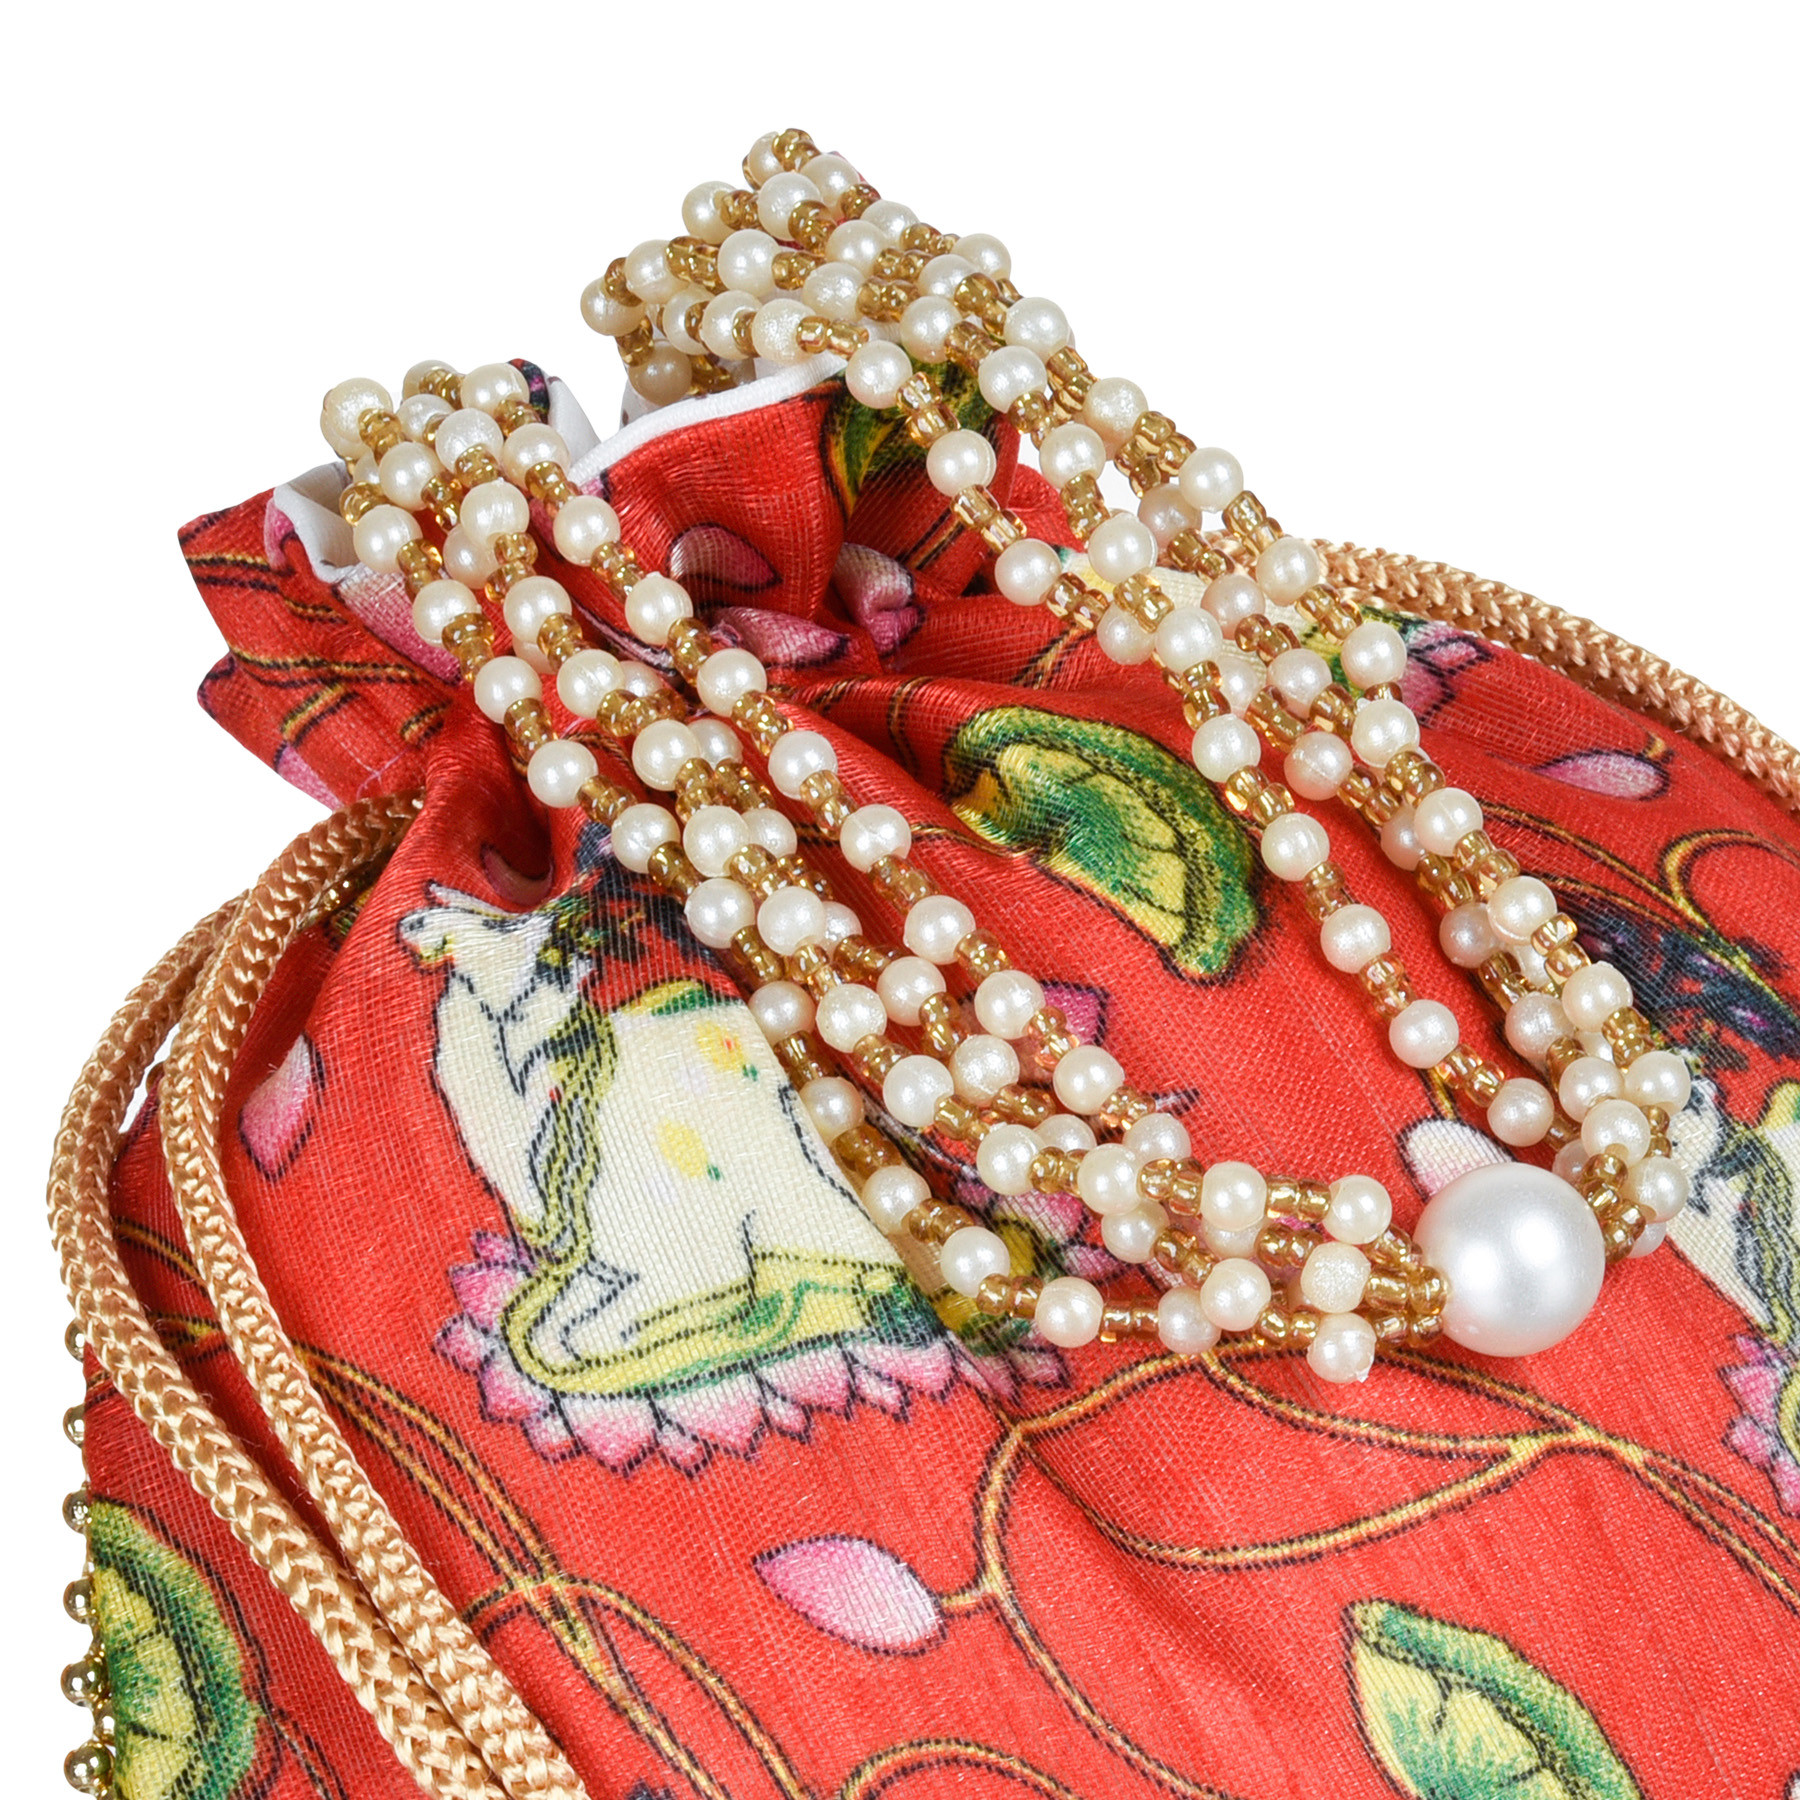 Kuber Industries Potli | Silk Wedding Potli | Wallet Potli | Christmas Gift Potli | Baby Shower Potli | Traditional Shagun Potli | Drawstring with Beads Handle Potli | Cow-Design Patli Potli | Pack of 2 | Multi